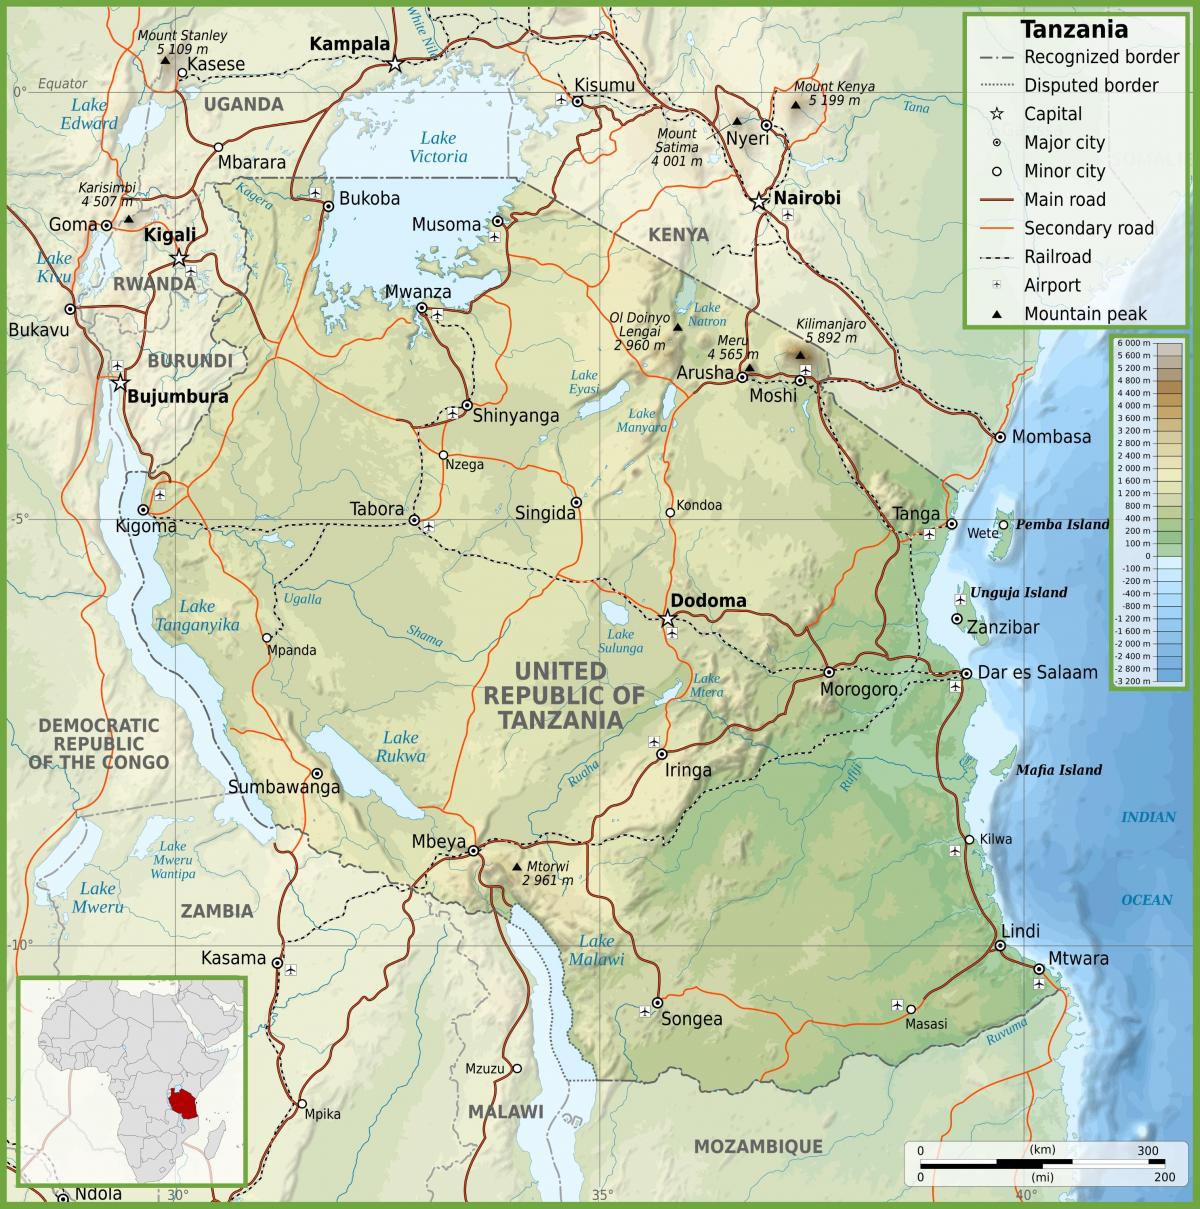 તાંઝાનિયા માર્ગ નકશો સાથે કિલોમીટર